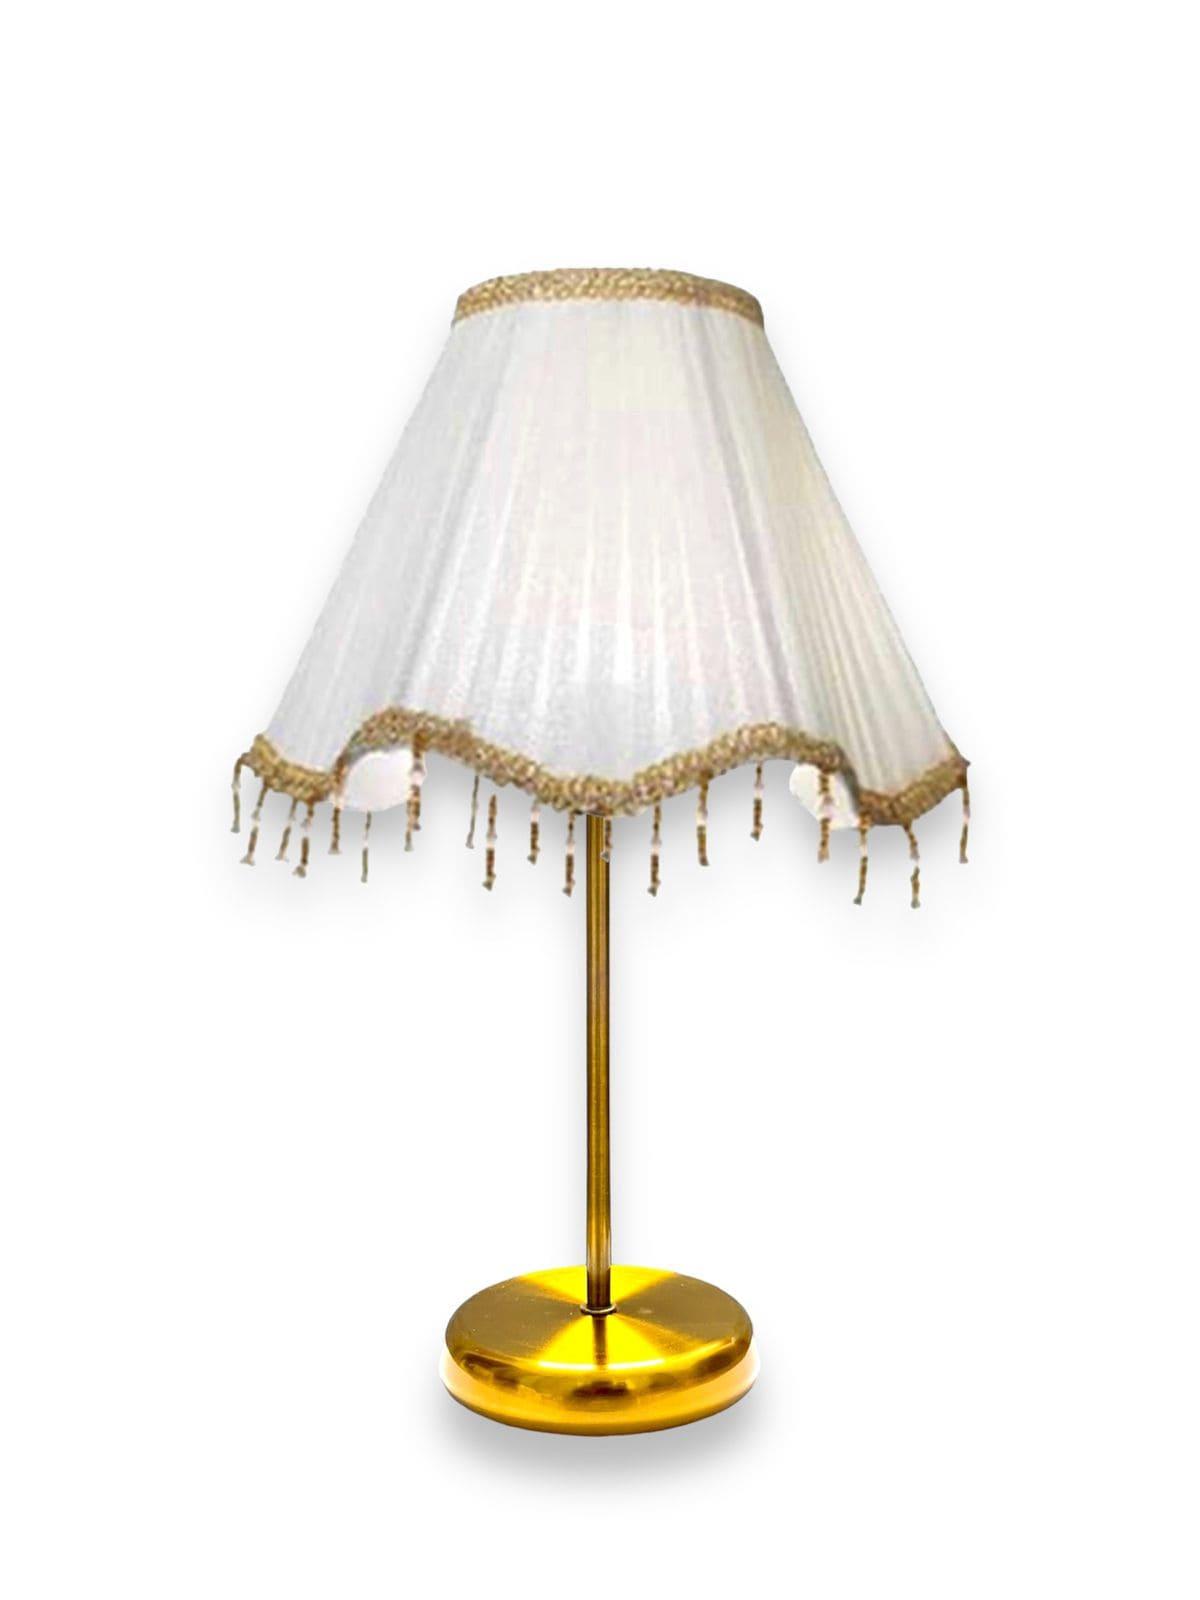 Dot Light - Golden Steel Table Lamp With White Shade 50×30 - DotGTL-50301